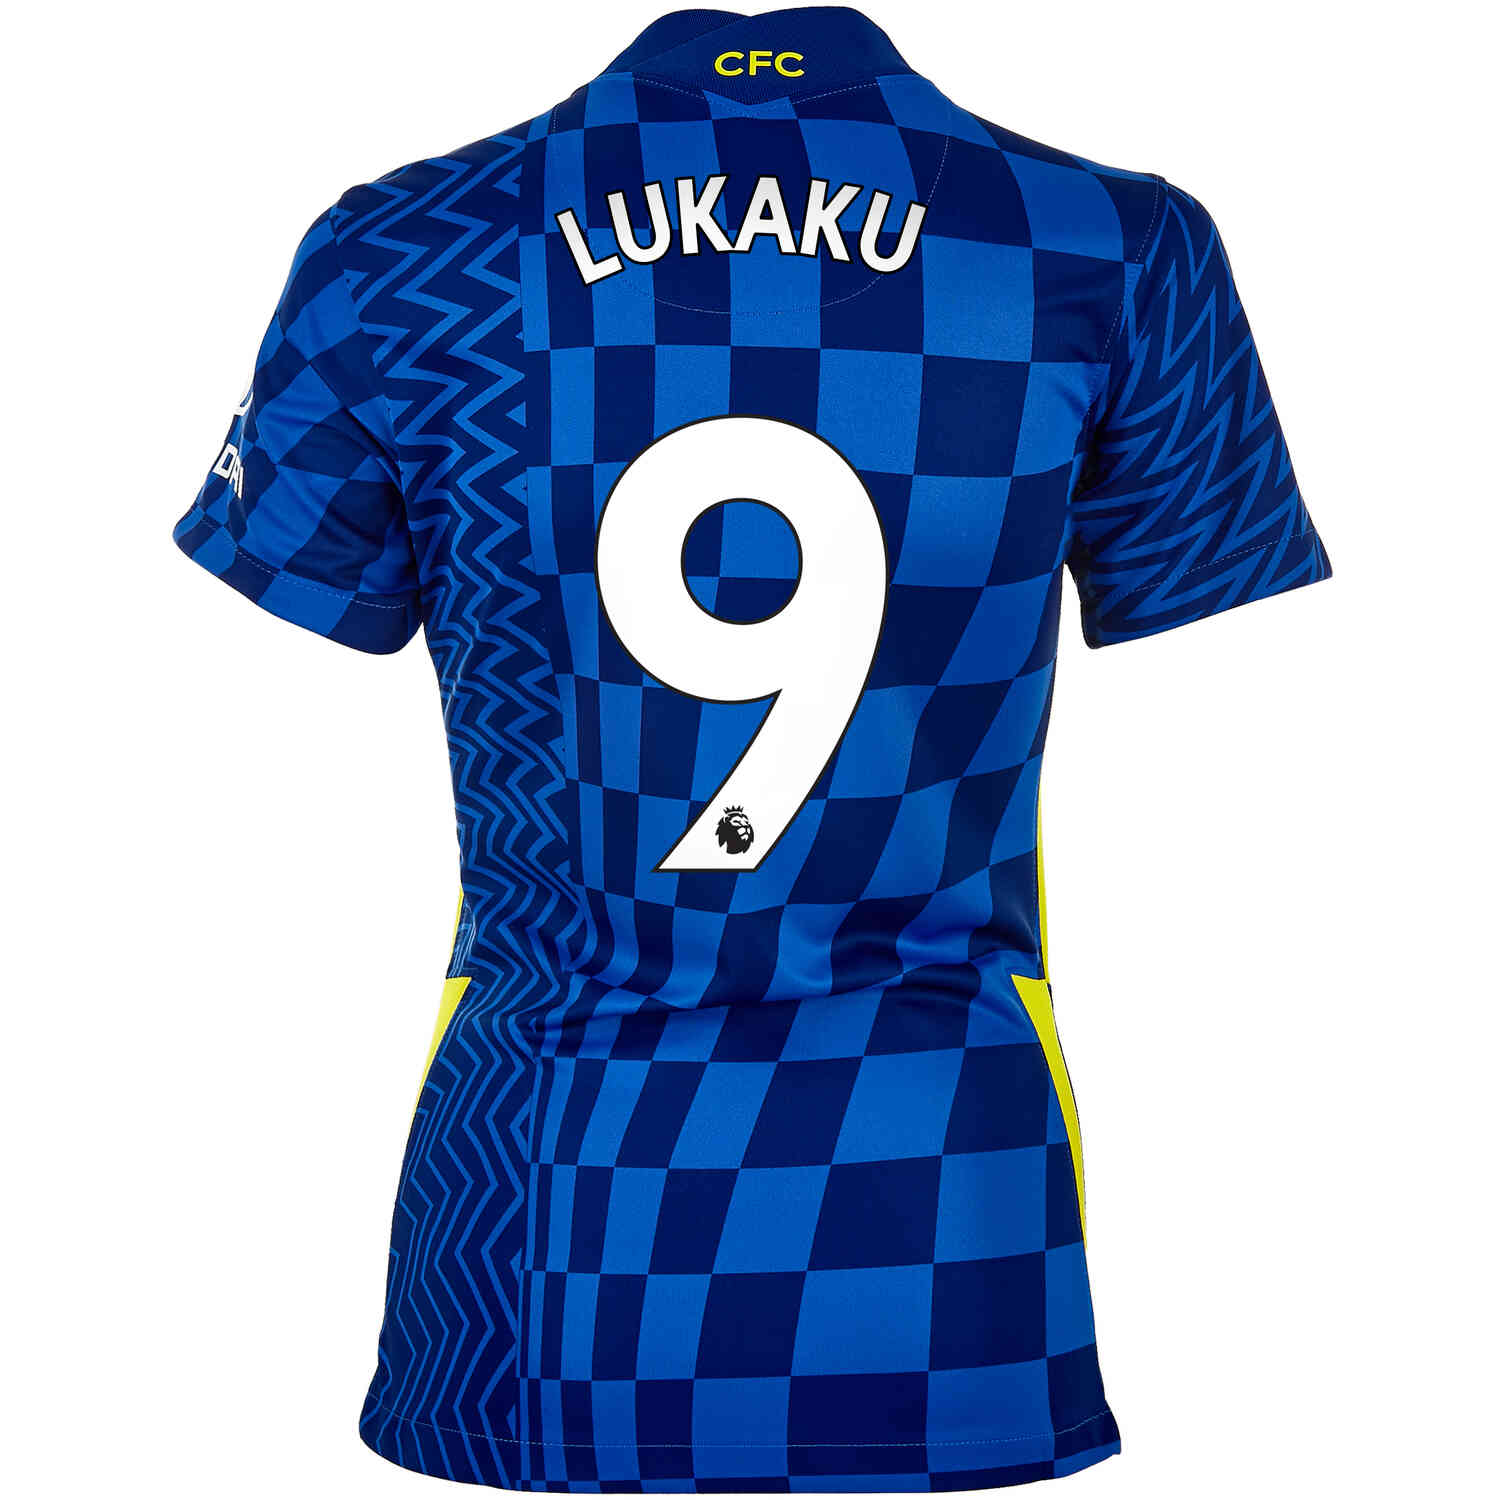 2021/22 Womens Nike Romelu Lukaku Chelsea Home Jersey - SoccerPro